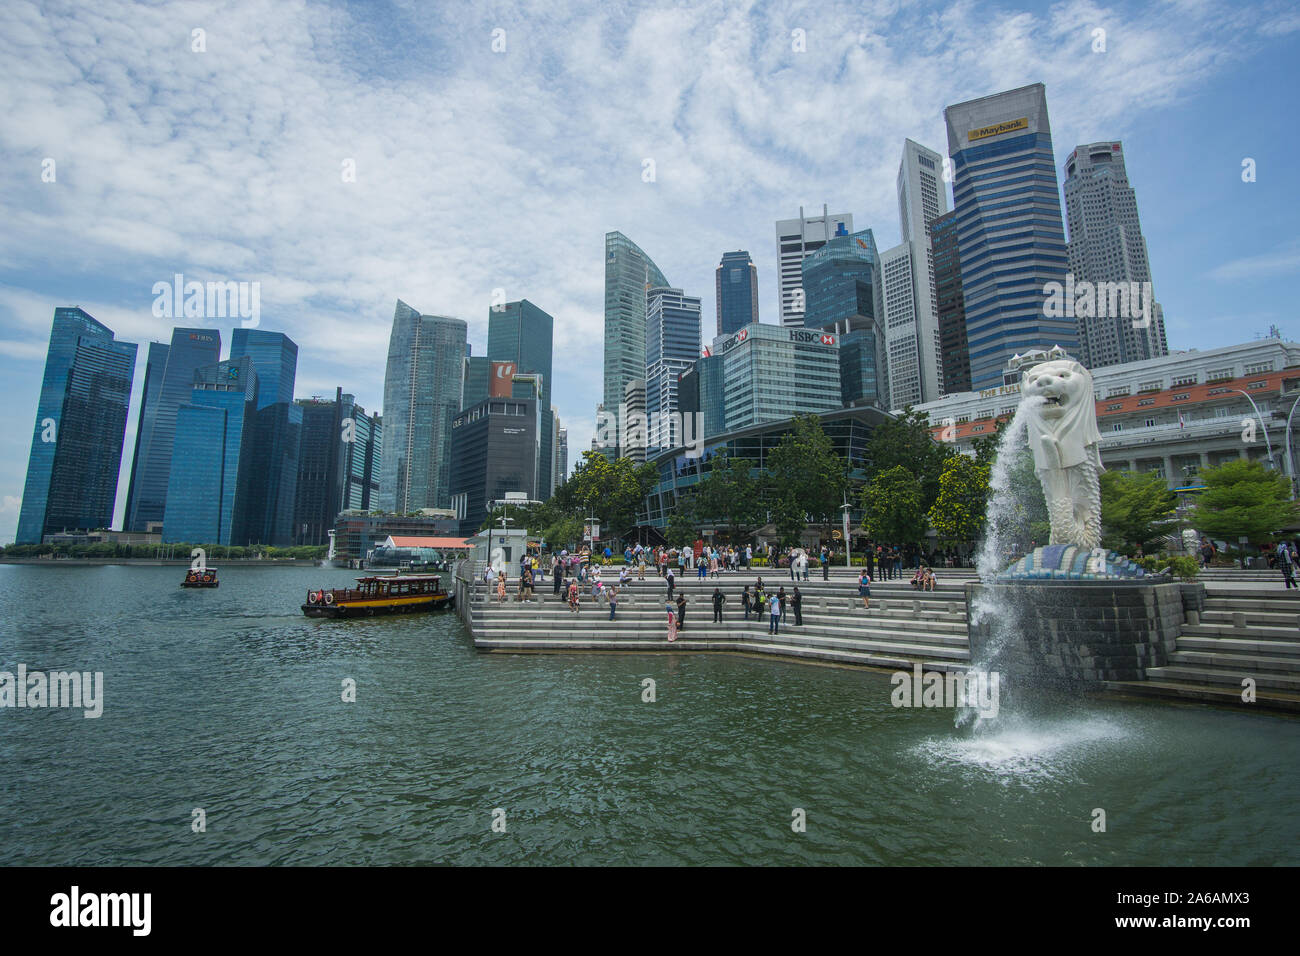 La statue du Merlion dans une belle journée autour de la Marina Bay à Singapour , cette place emblématique soufflera votre esprit avec ses célèbres bâtiments. Banque D'Images